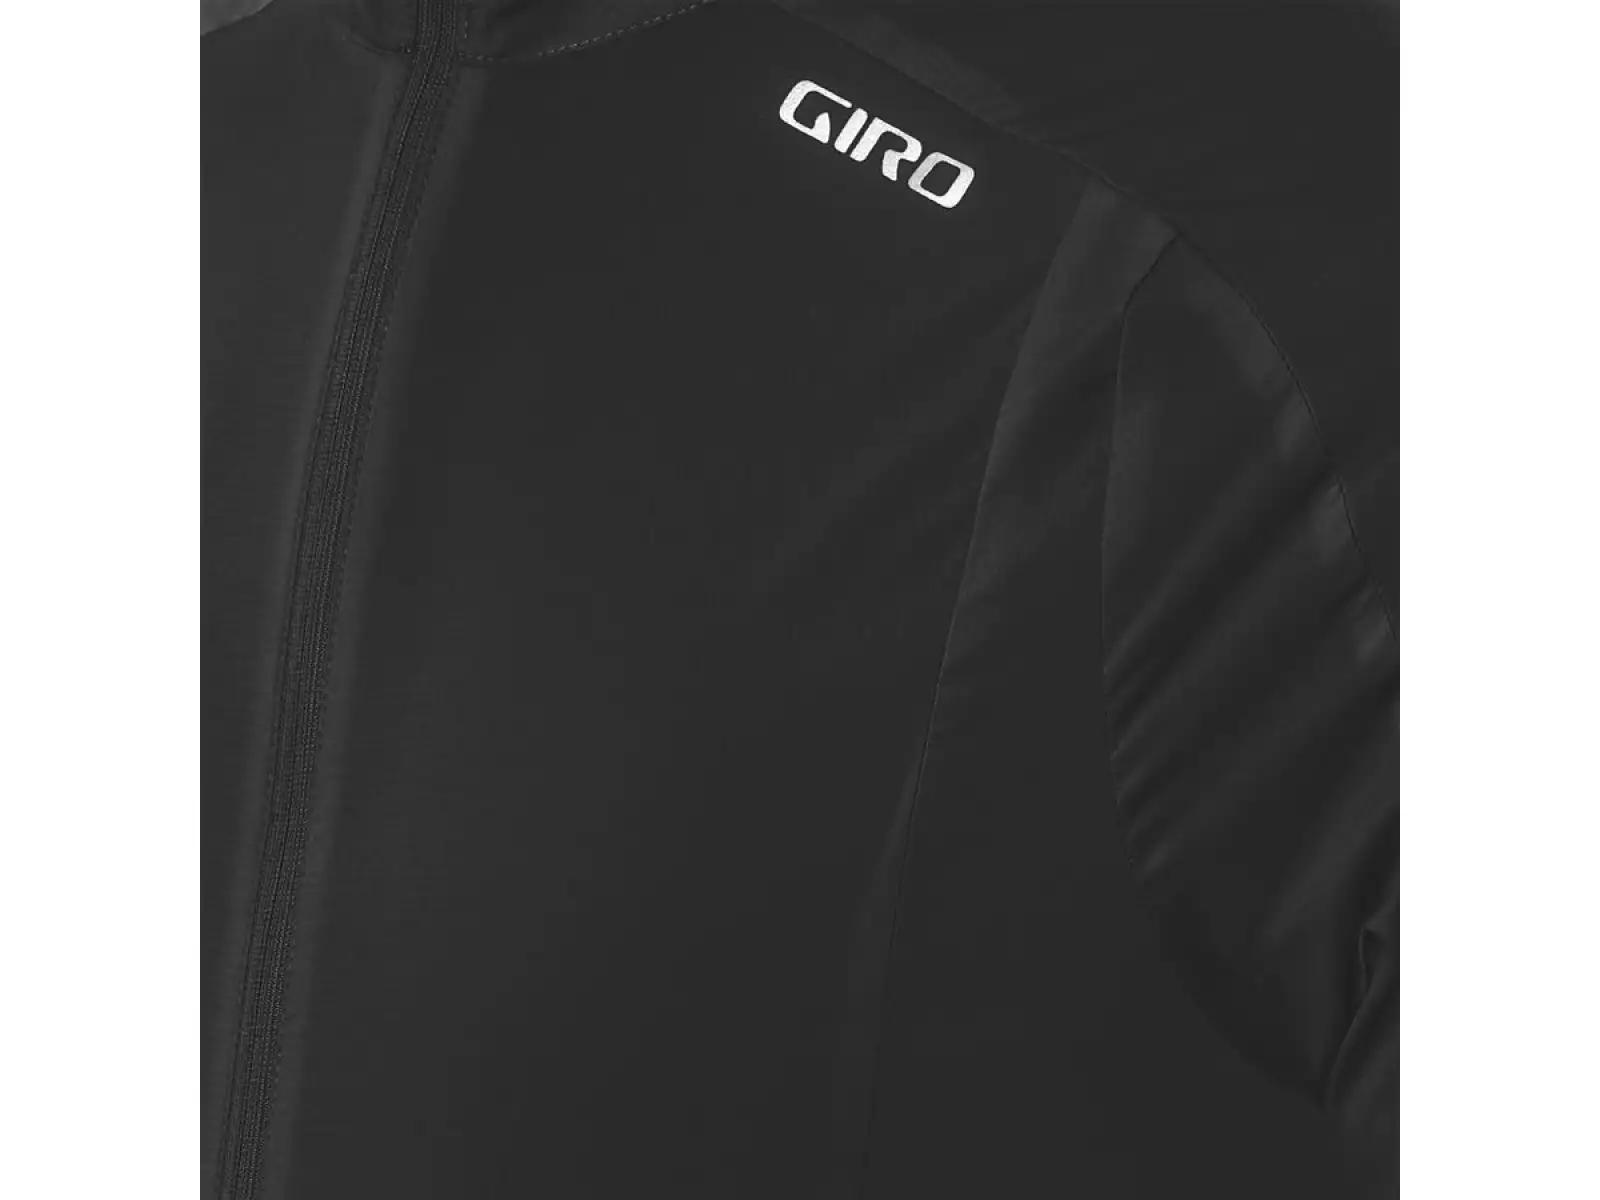 Giro Chrono Expert Wind pánský dres dlouhý rukáv Black